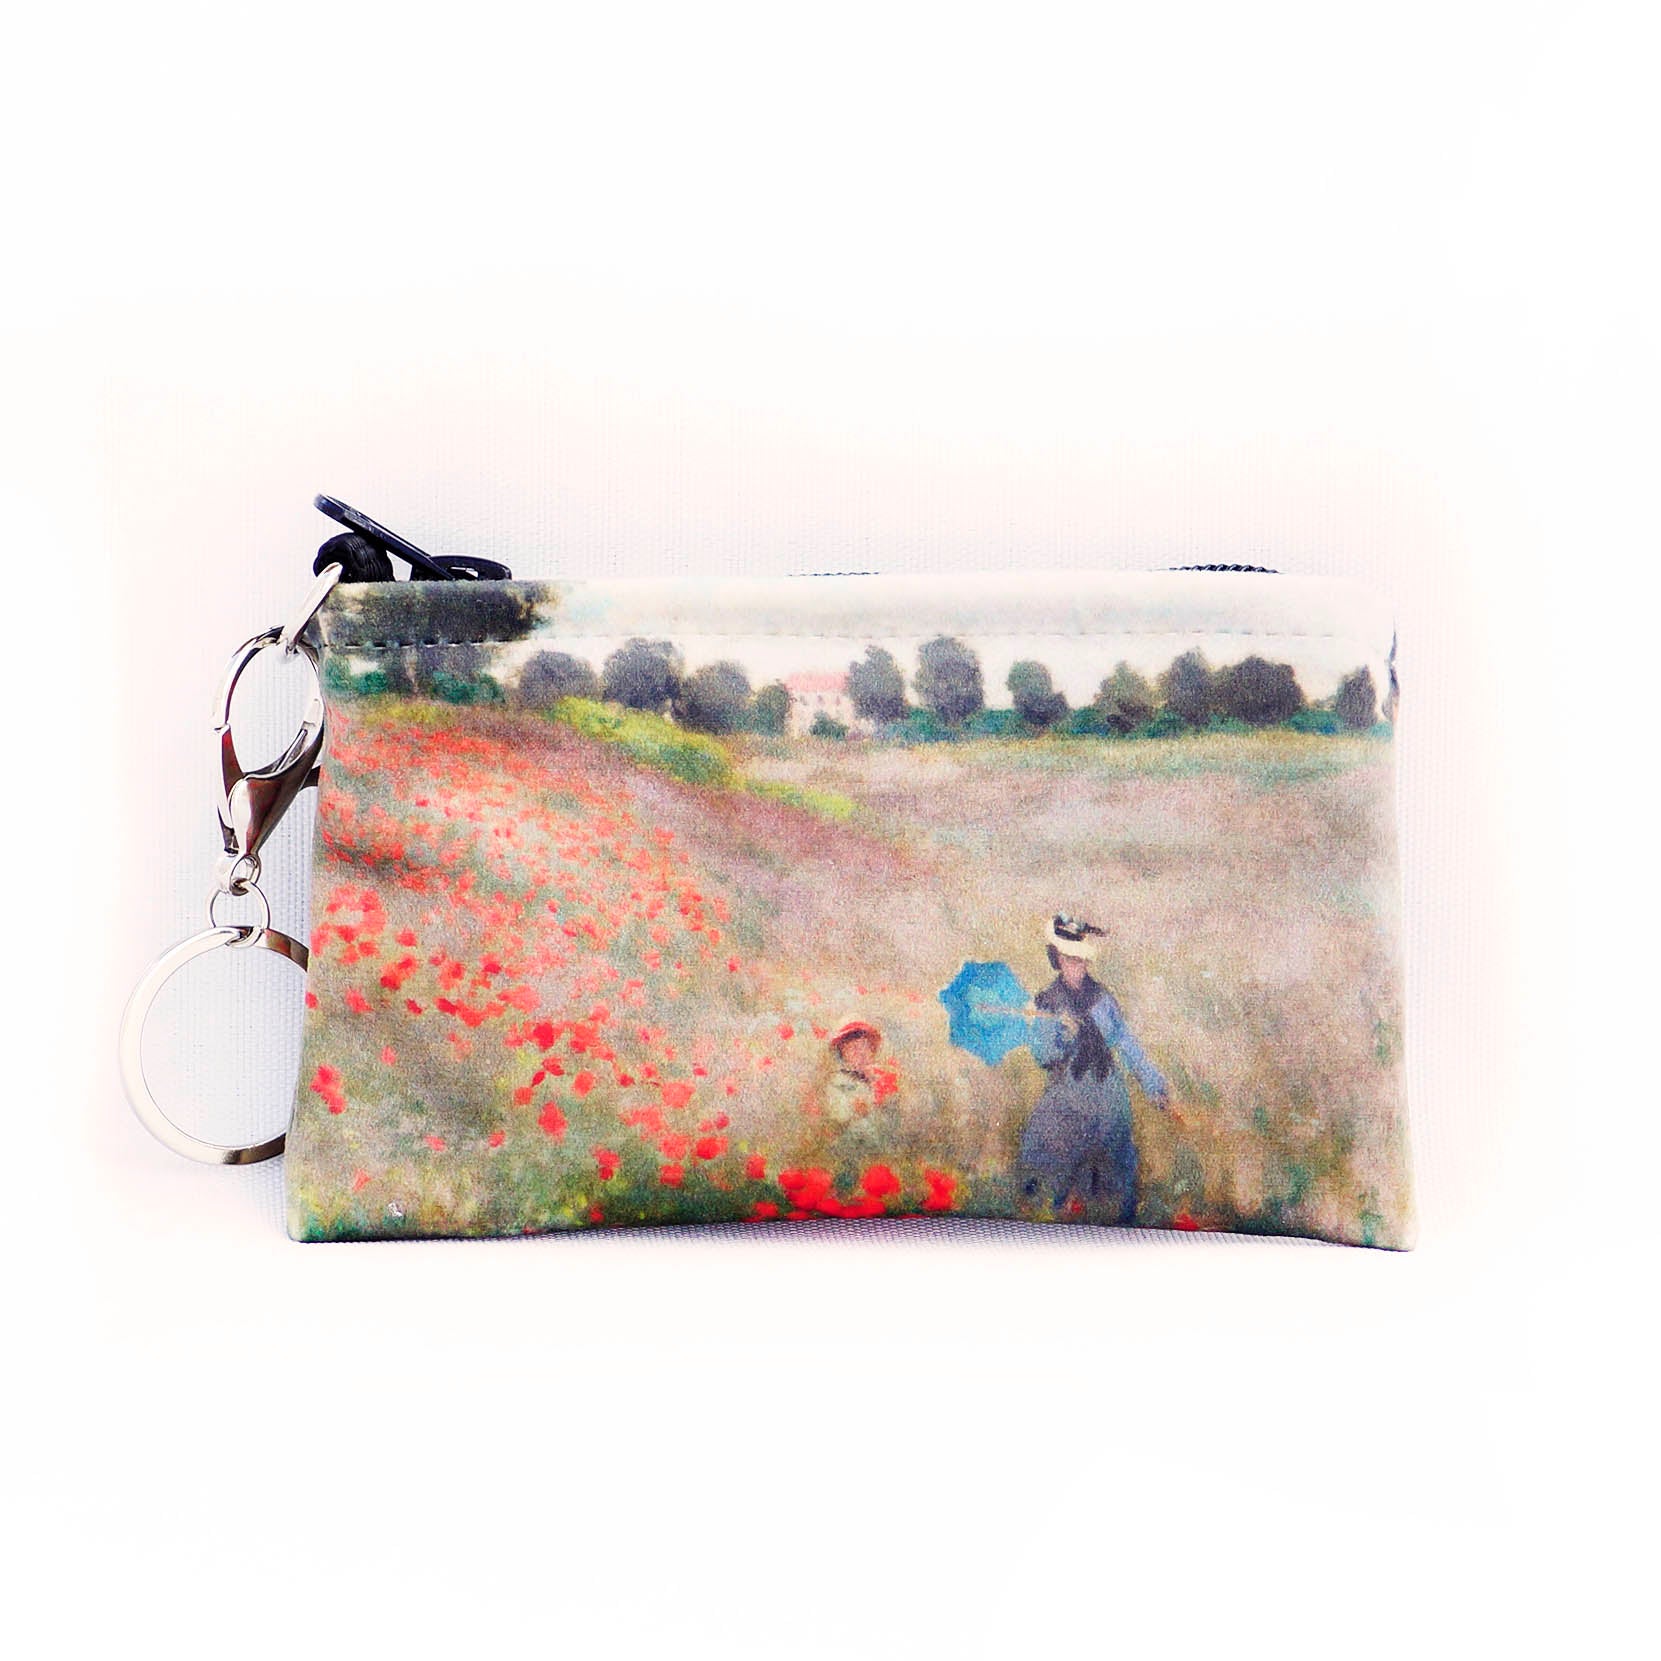 Raktinė Claude Monet "Poppy Field"